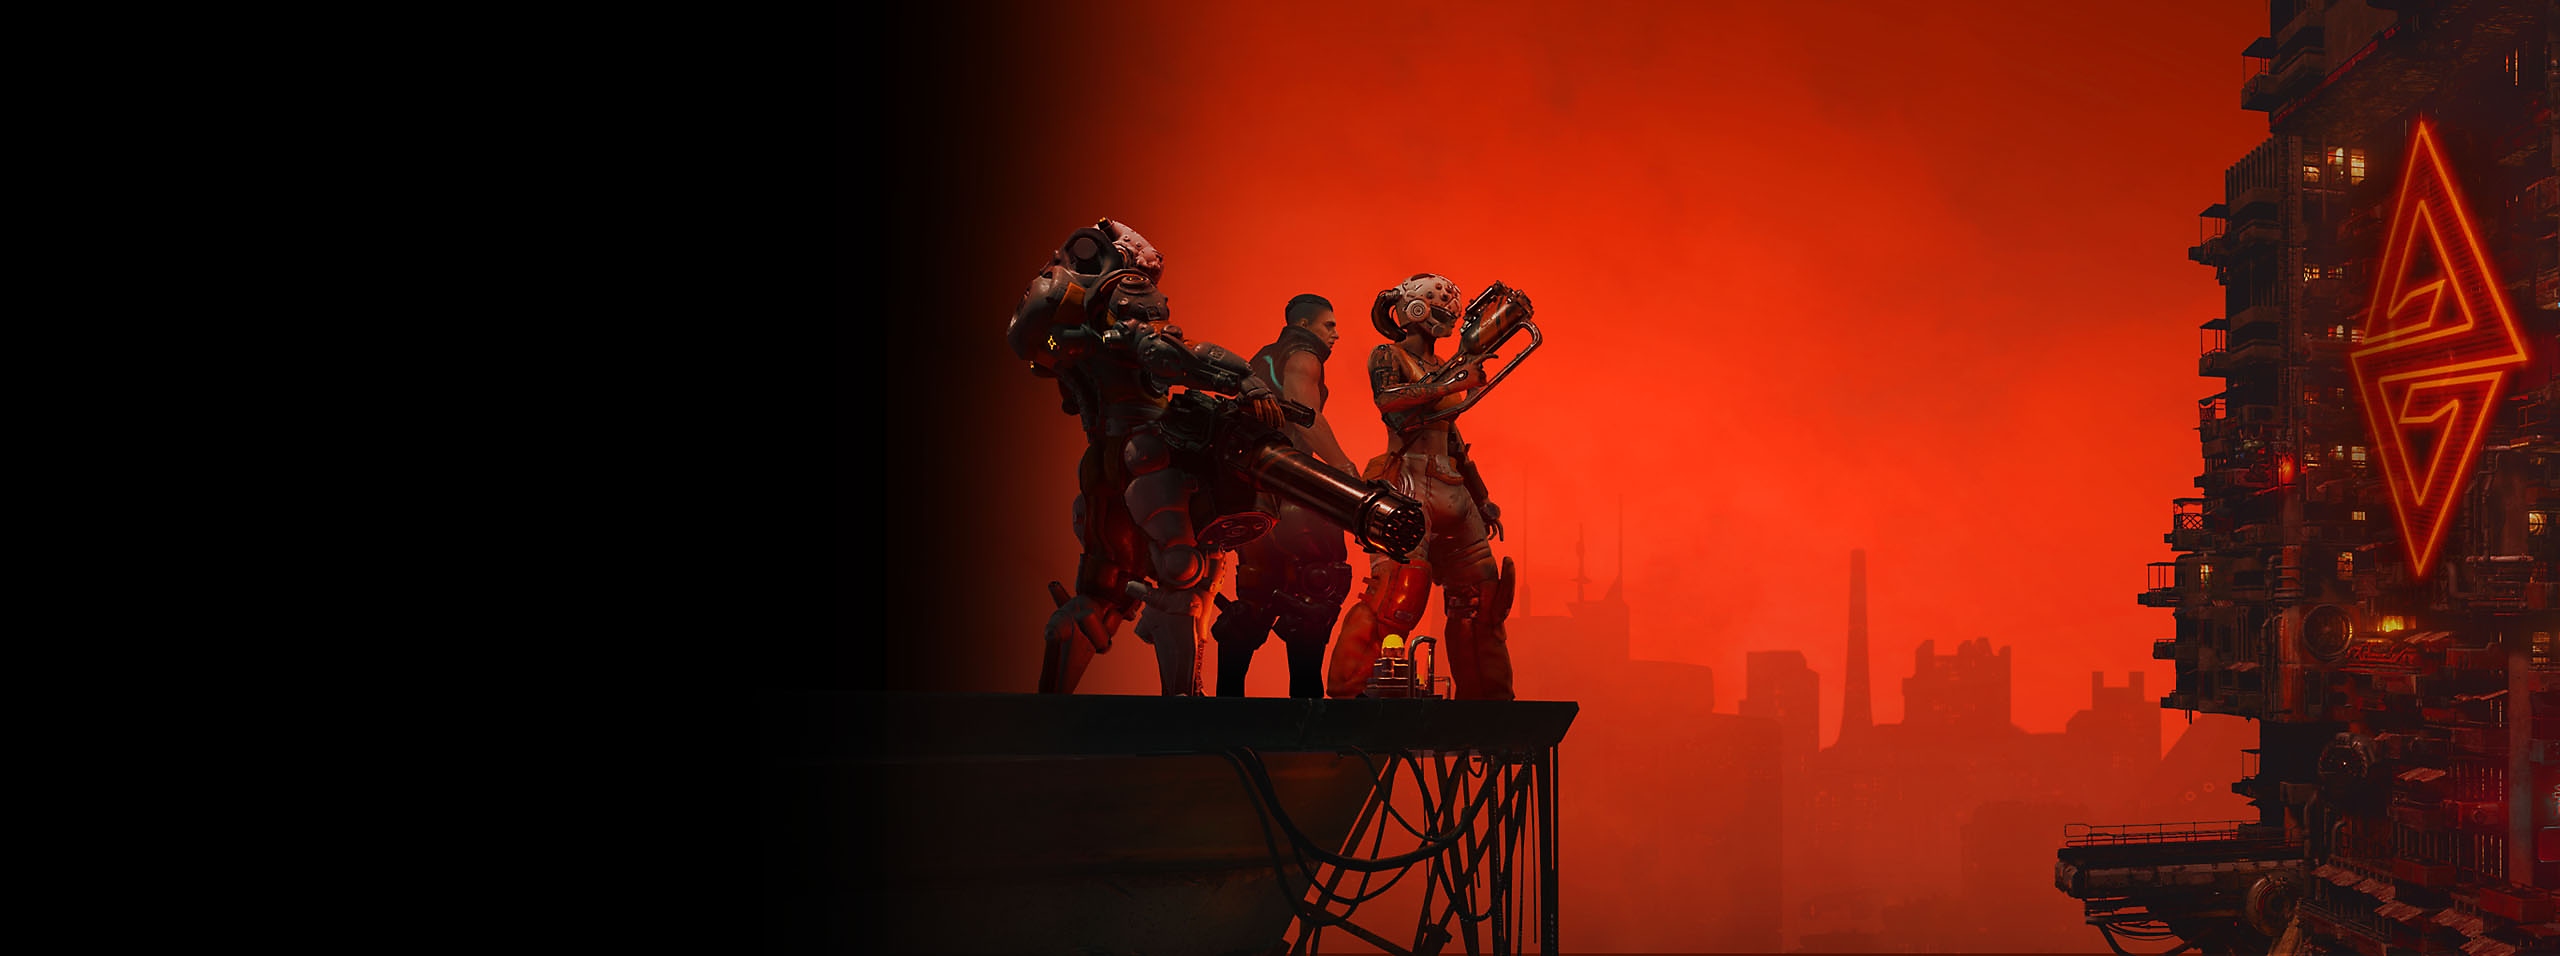 Image de héros de The Ascent - trois personnages devant un paysage urbain sous un ciel rouge 